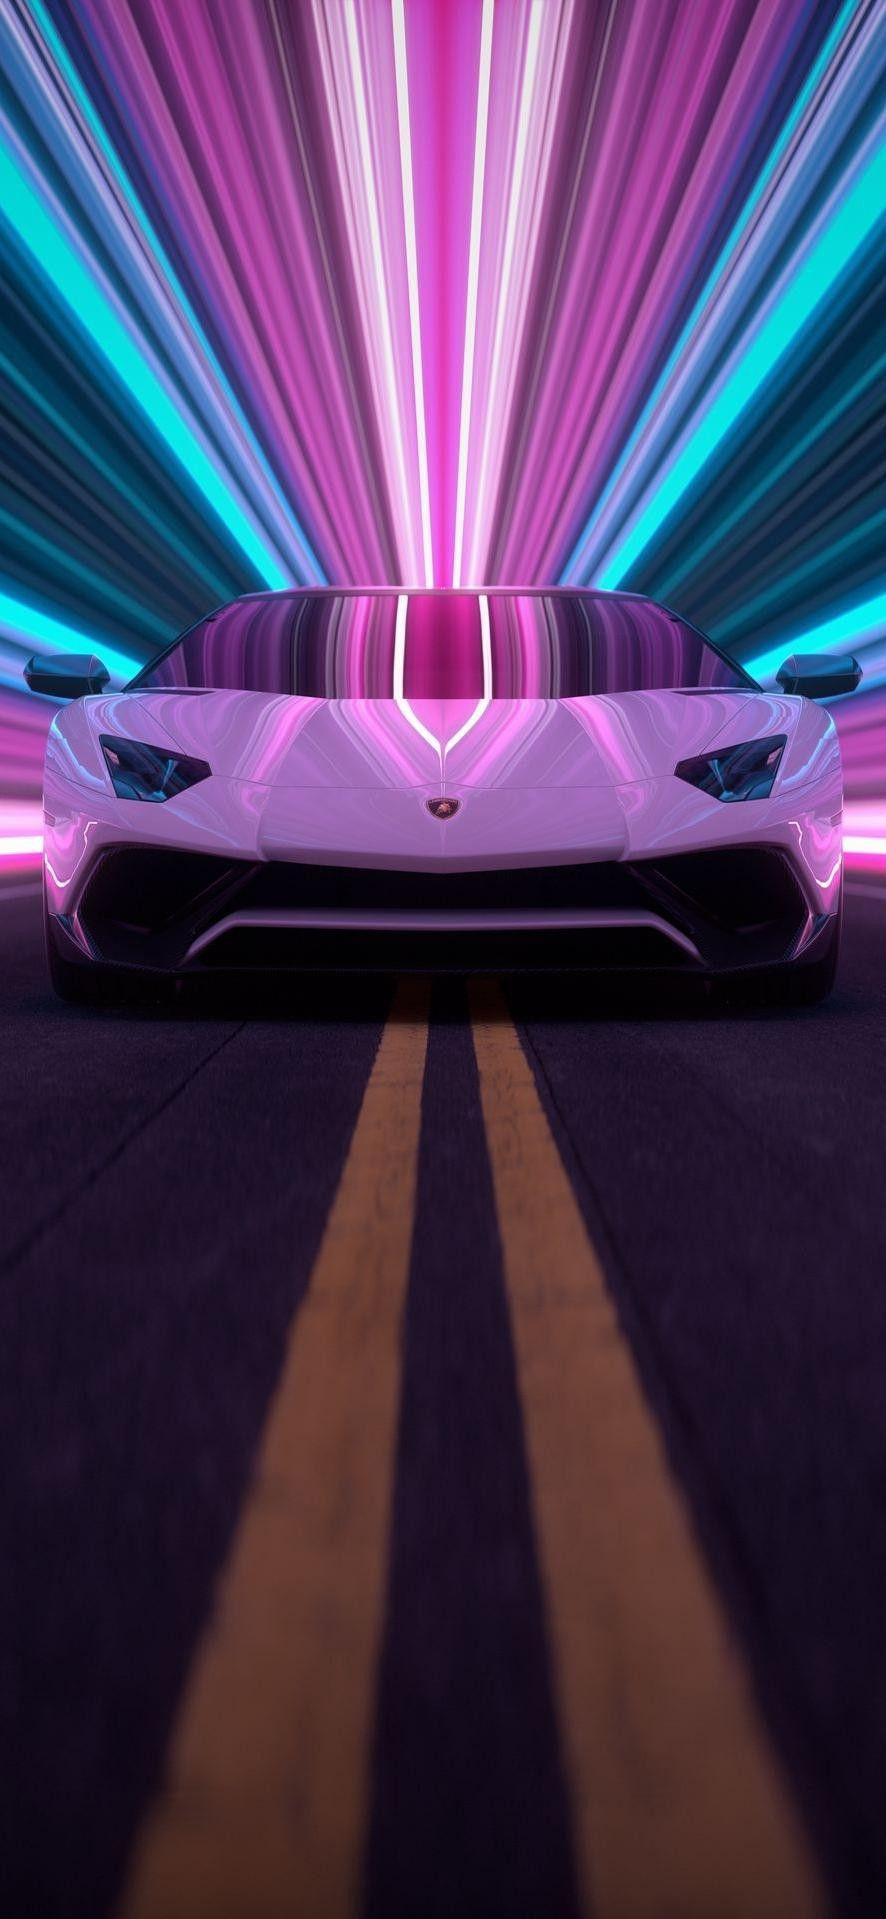 Lamborghini HD Wallpaper Dream Cars Car iPhone